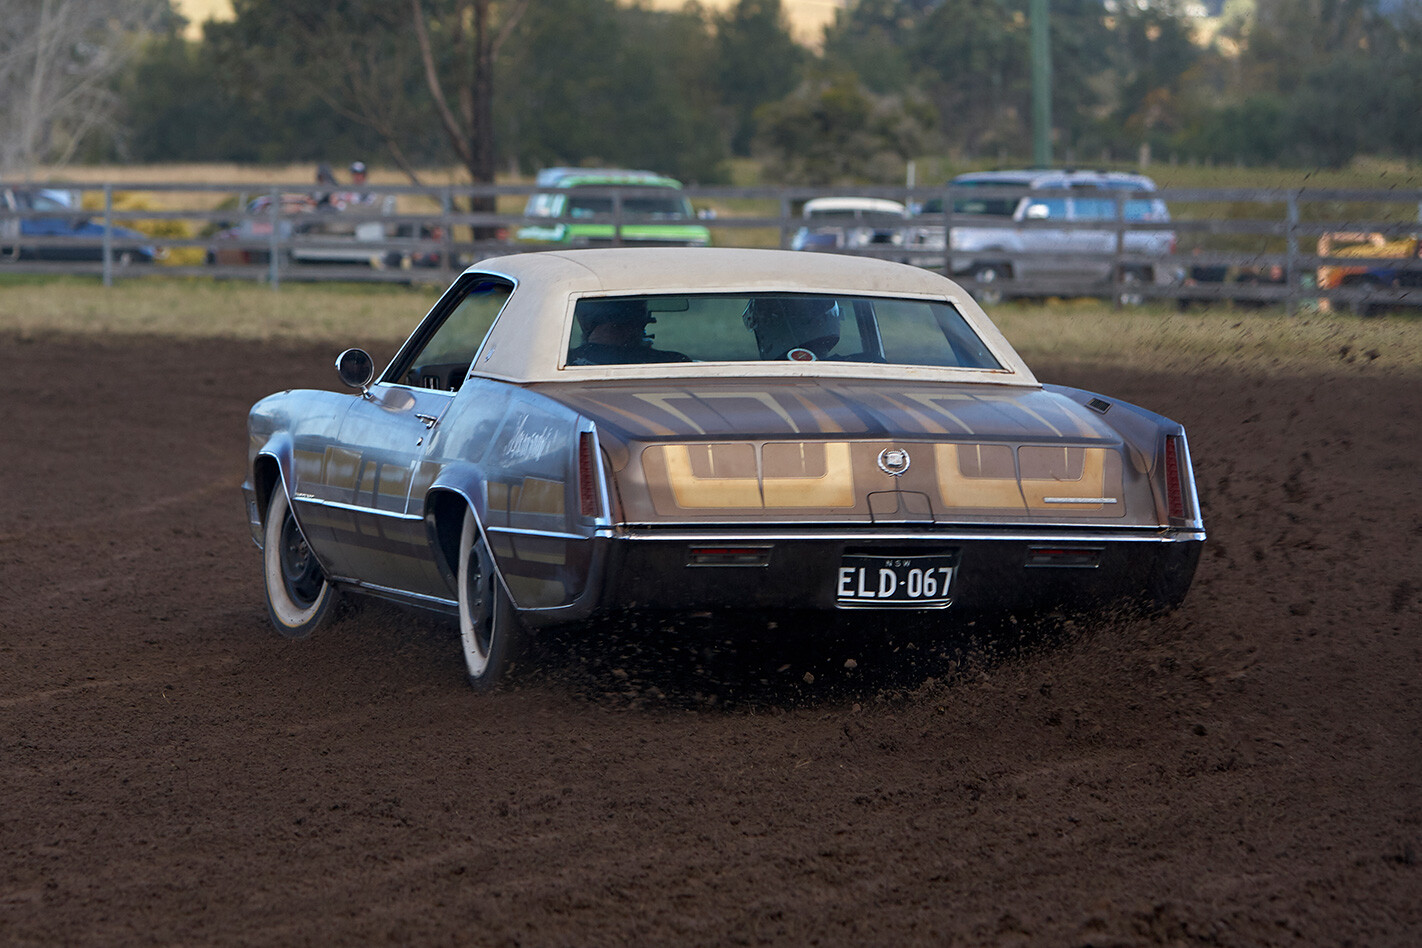 Mud Run Devil Car Club